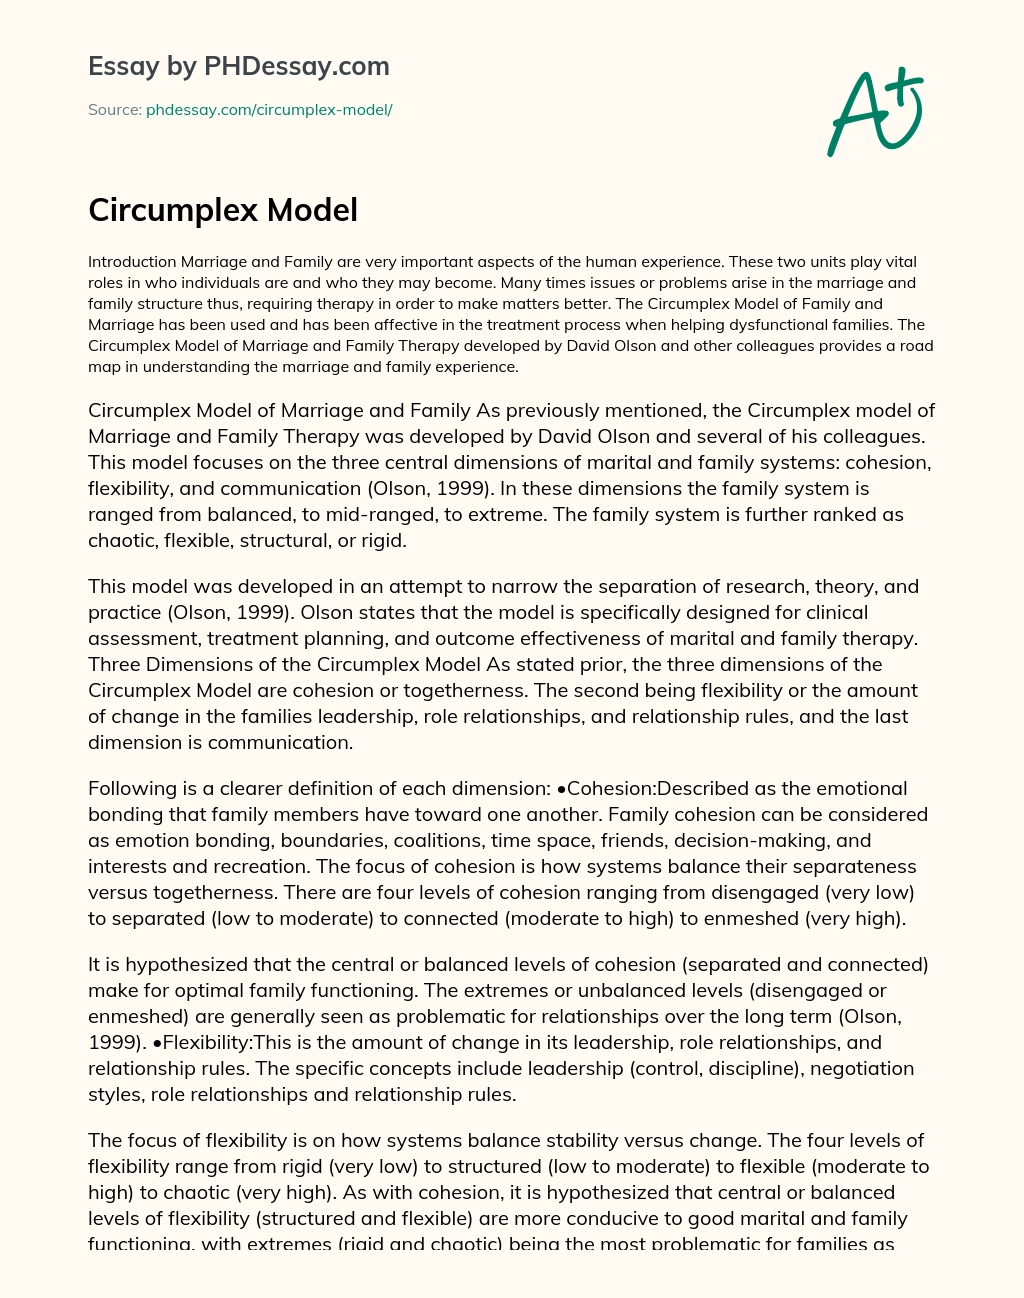 Circumplex model essay